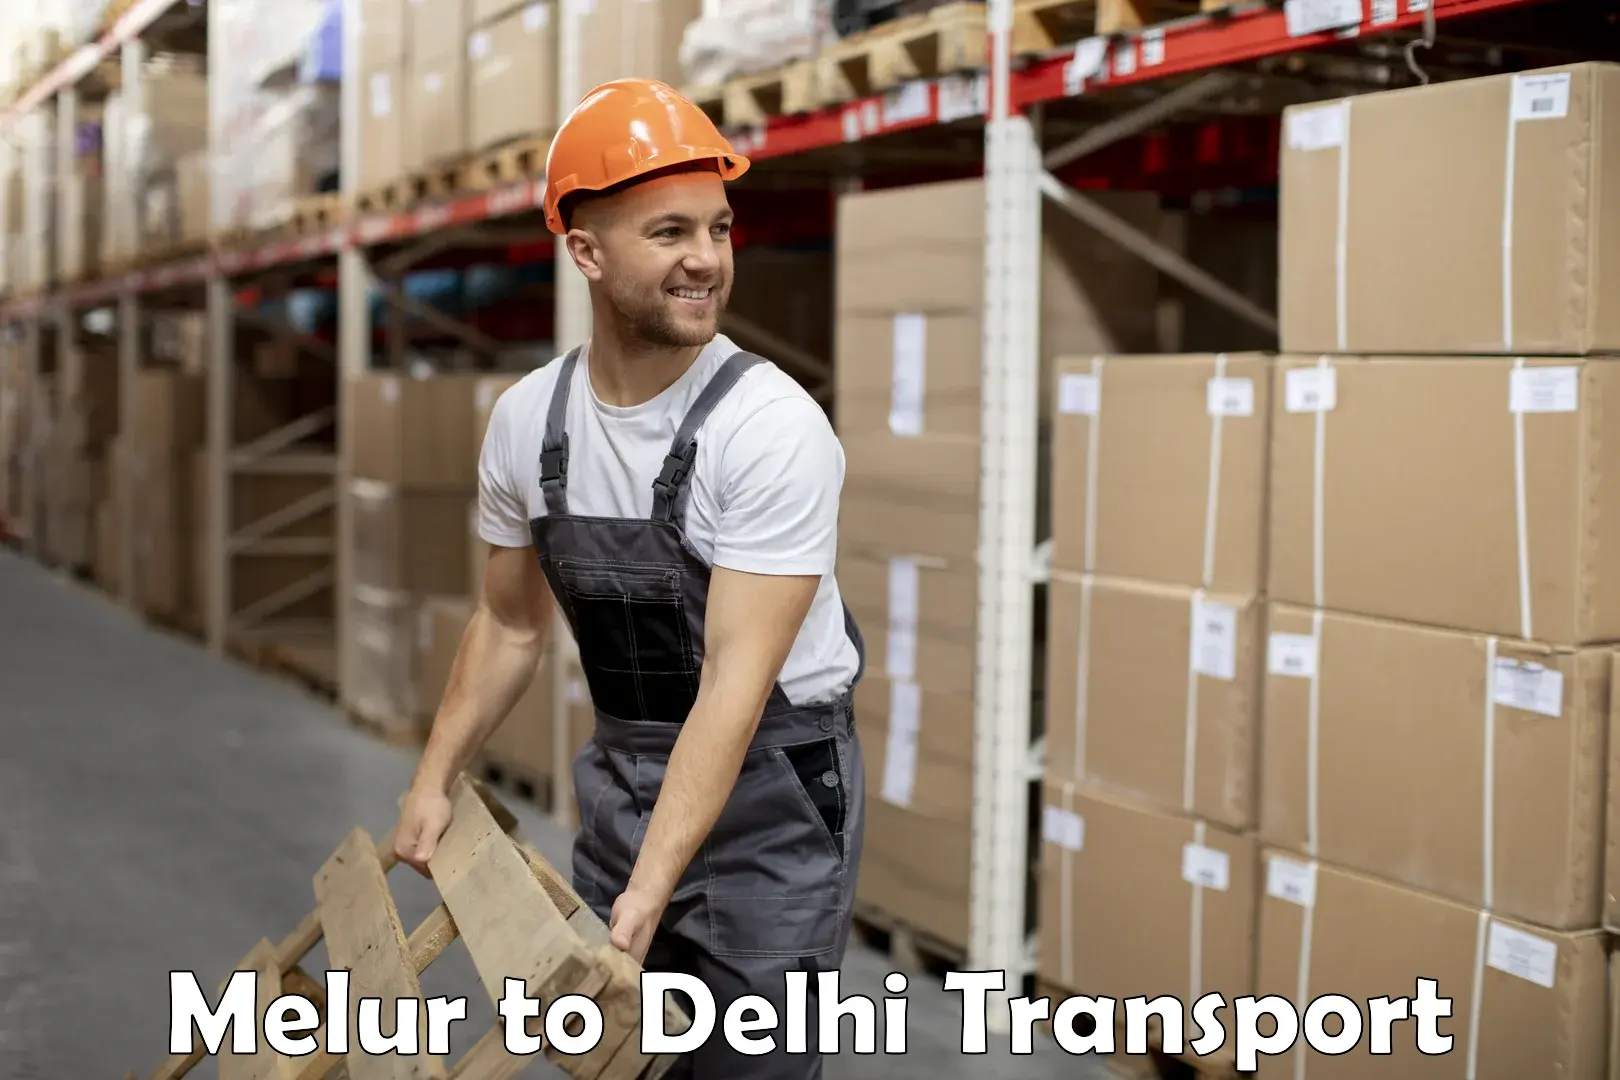 Furniture transport service Melur to East Delhi